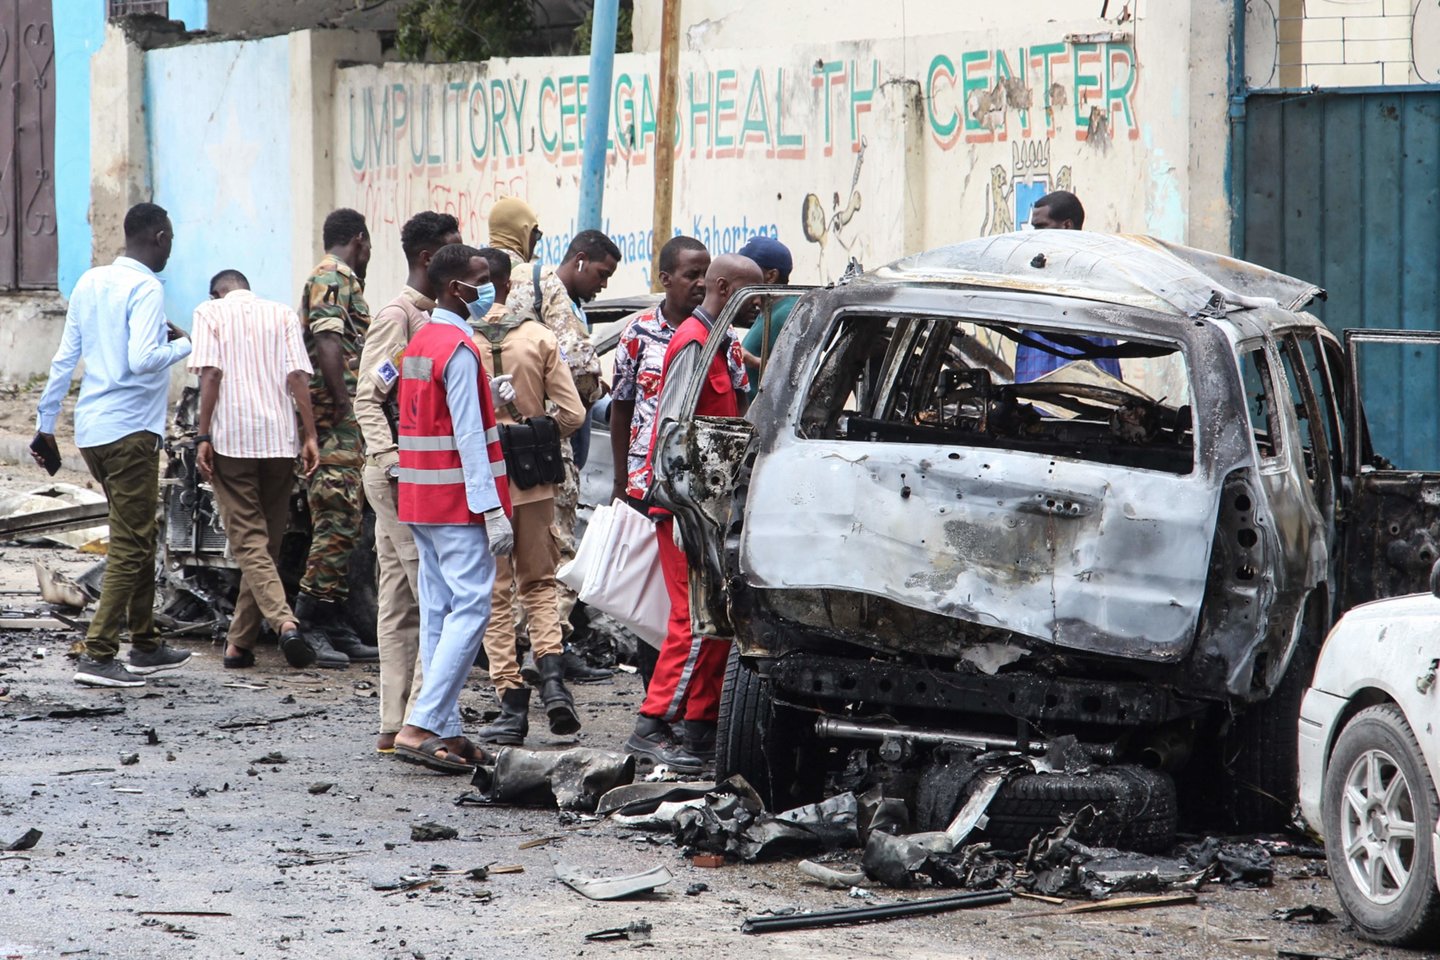  Somalyje per sprogdinimą prie prezidentūros žuvo 8 žmonės.  <br> AFP/Scanpix nuotr.